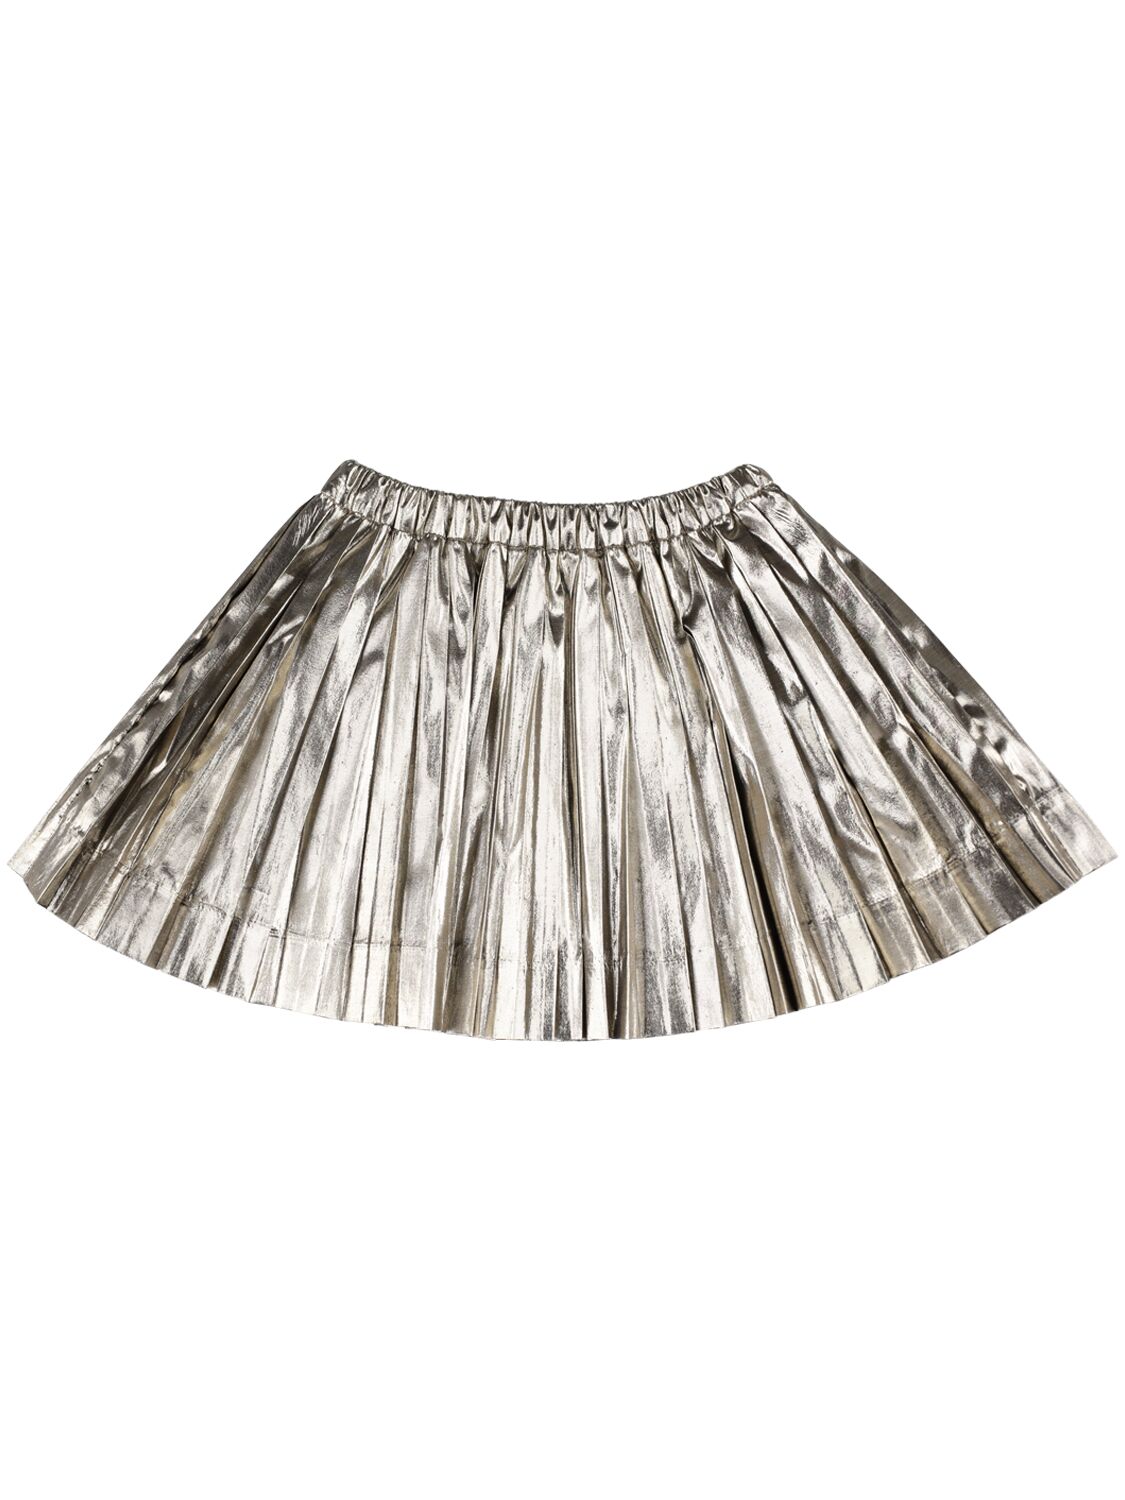 Image of Beryl Pleated Skirt